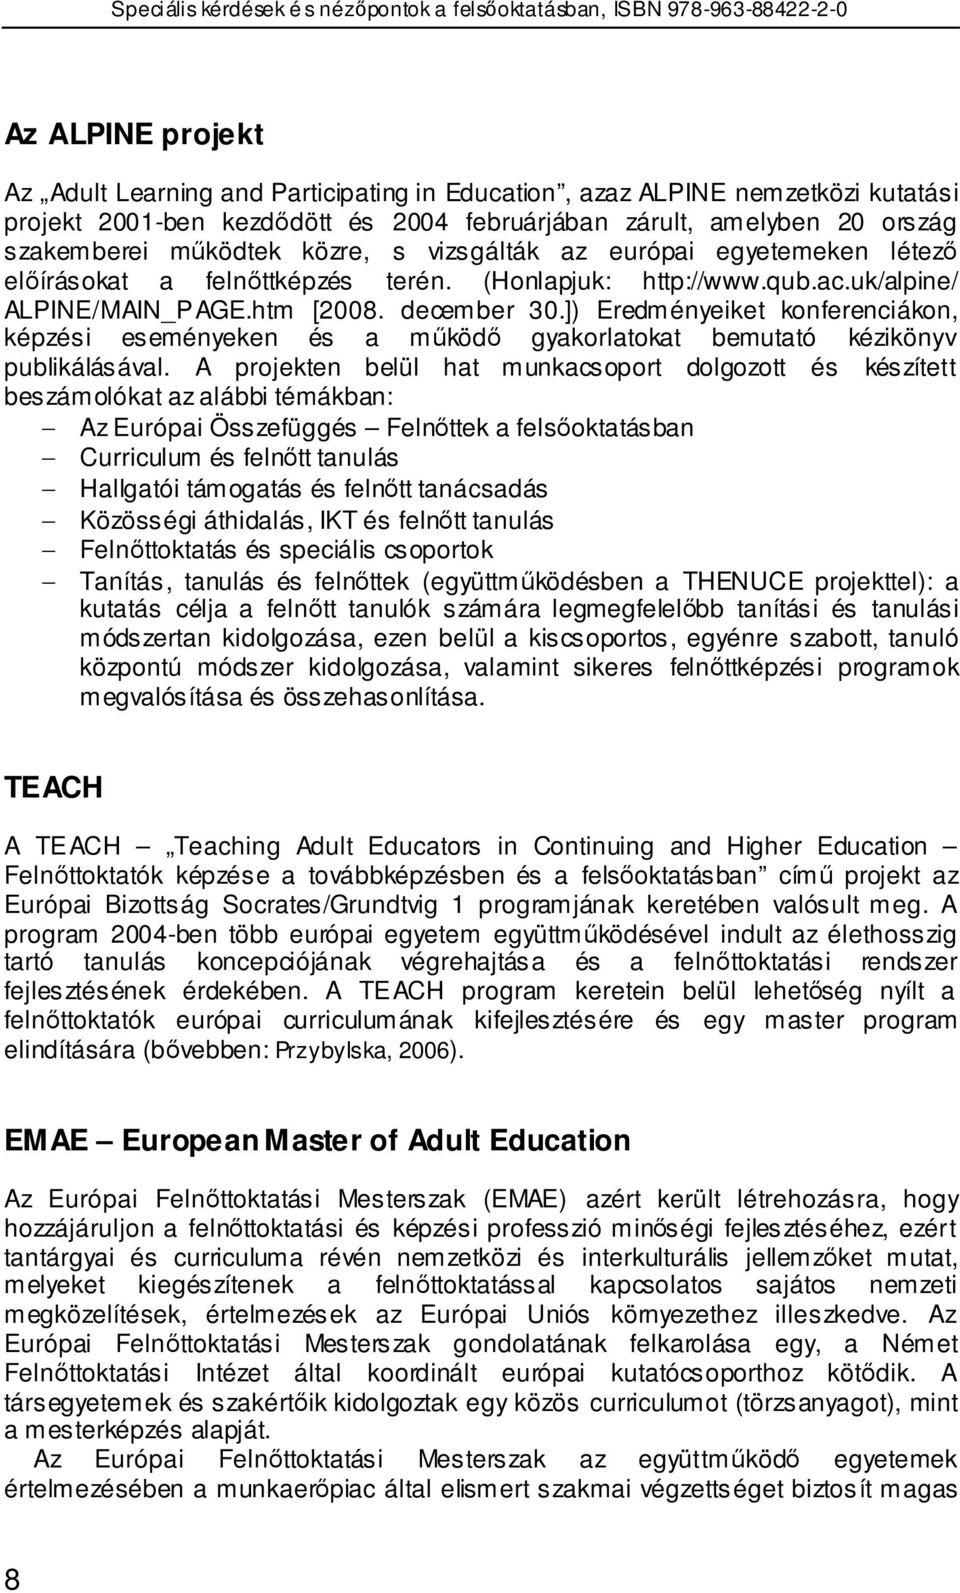 ]) Eredményeiket konferenciákon, képzési eseményeken és a mőködı gyakorlatokat bemutató kézikönyv publikálásával.